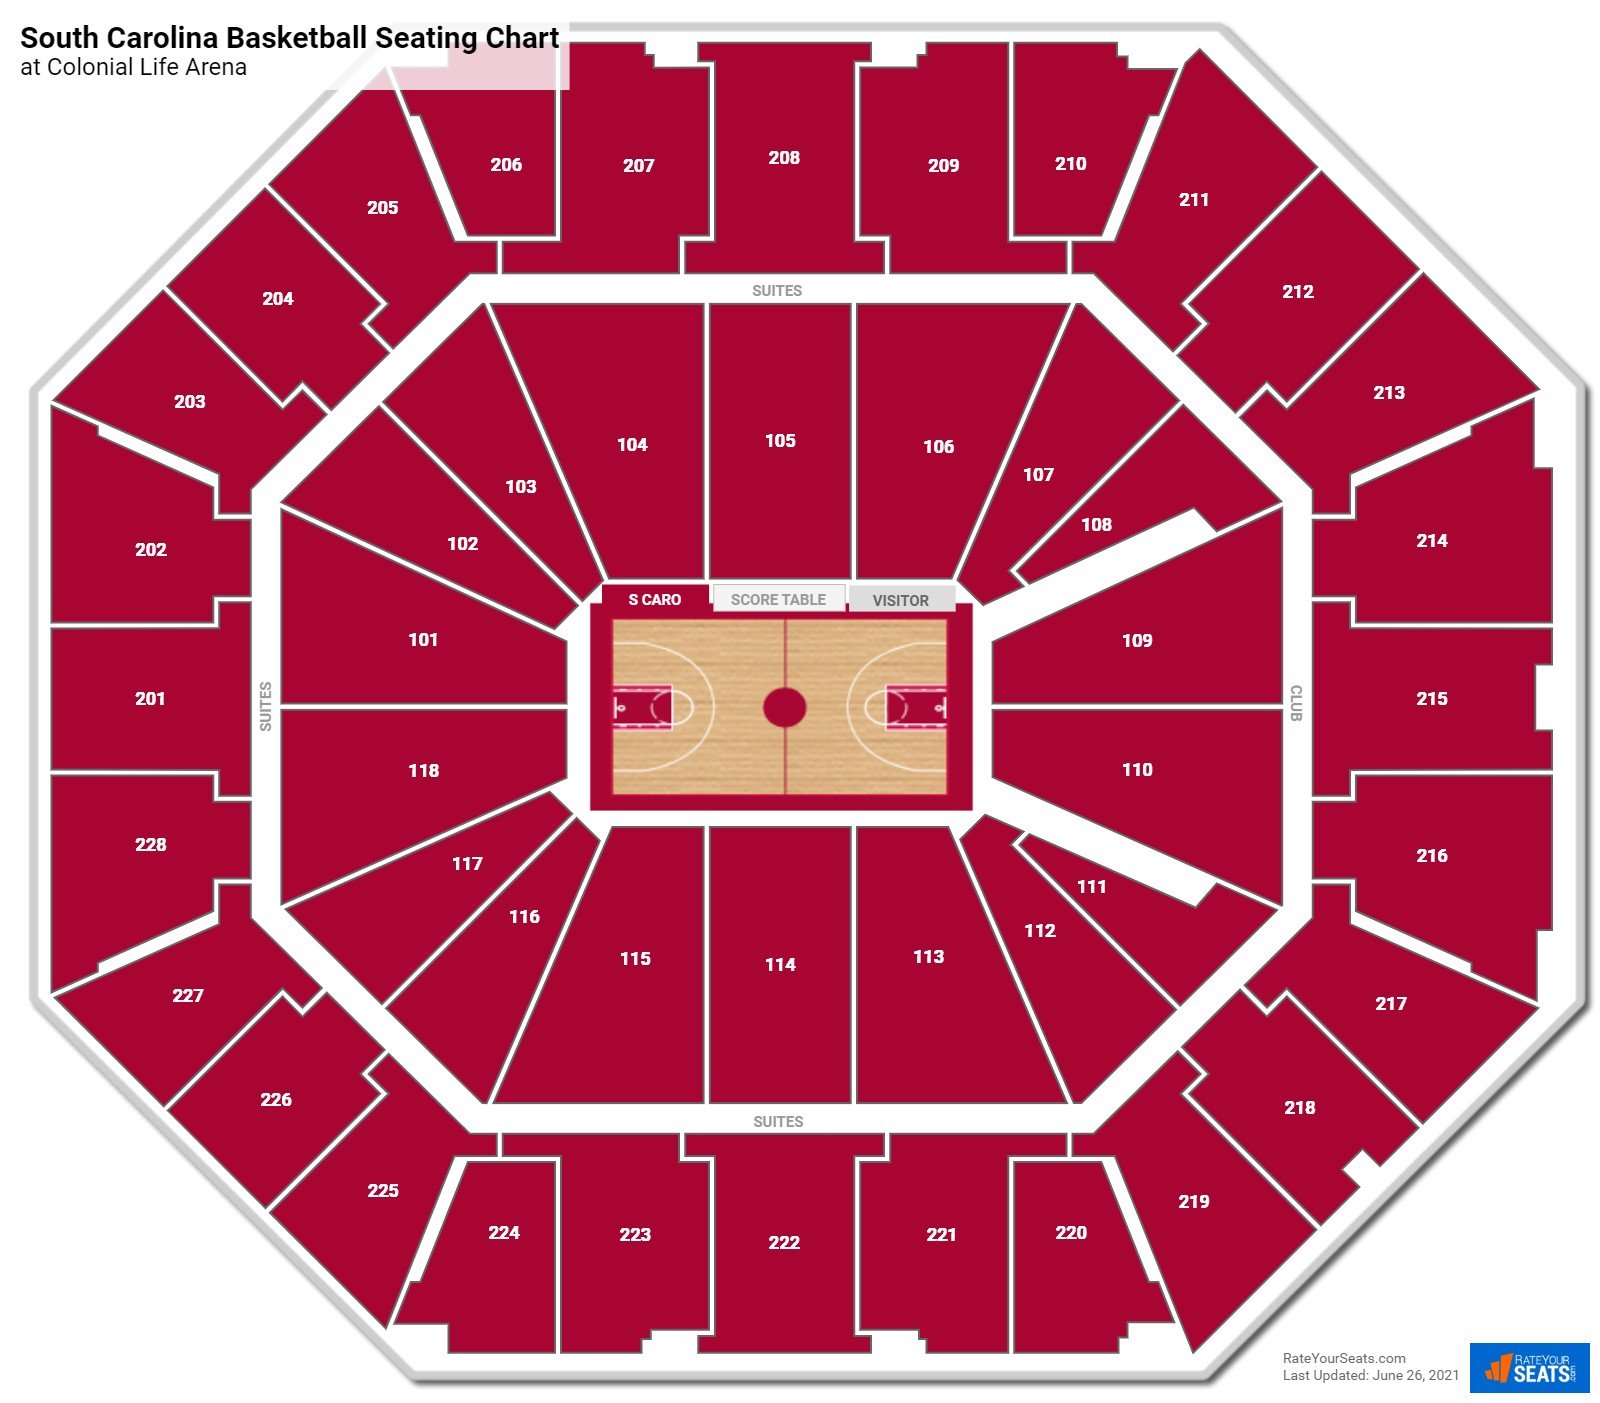 South Carolina Gamecocks Seating Chart at Colonial Life Arena